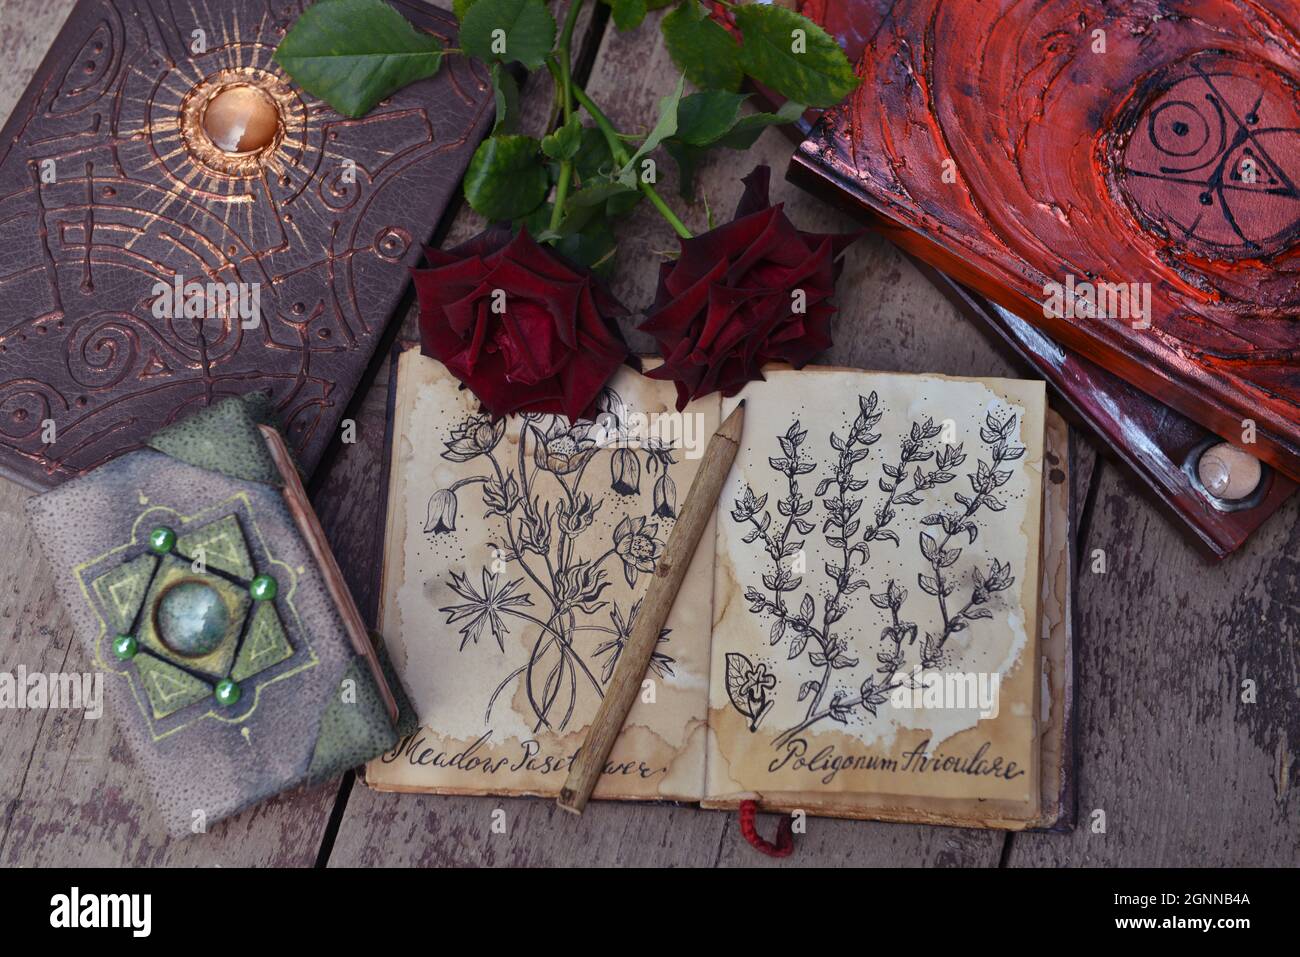 Encore la vie avec le vieux livre avec des dessins botaniques, des roses sur des planches en bois. Concept Knowledge avec agenda vintage vide et espace de copie, vue de dessus Banque D'Images